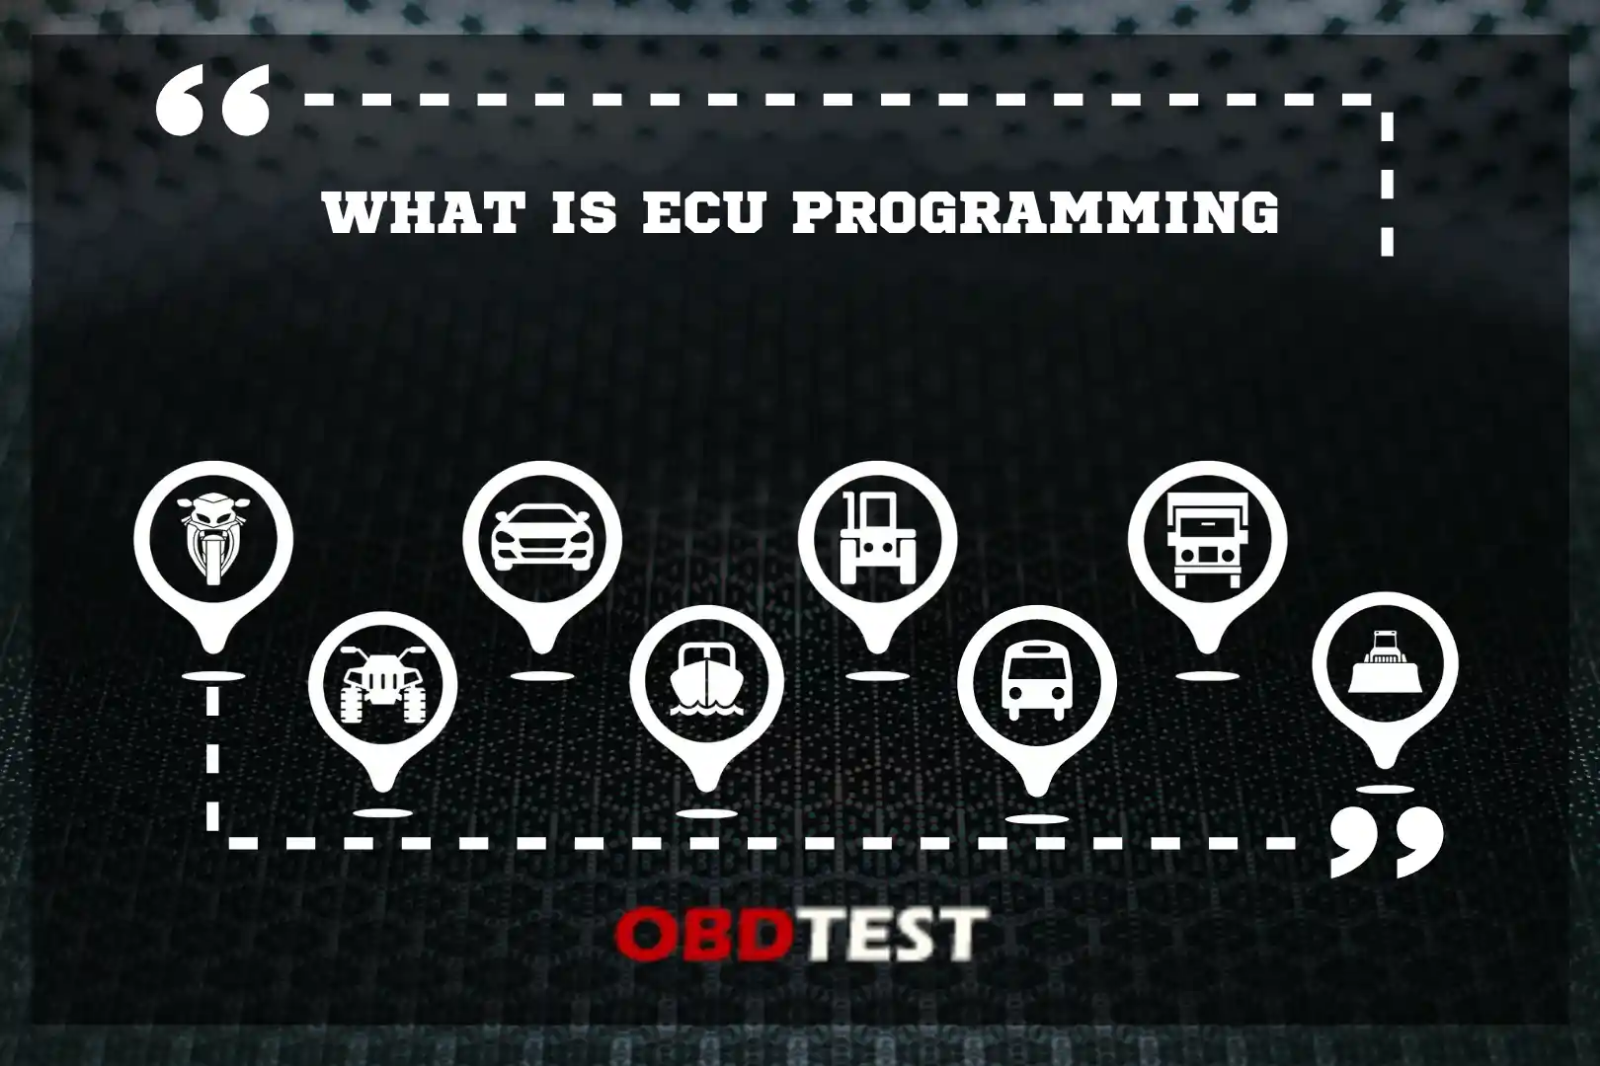 What is ECU programming?